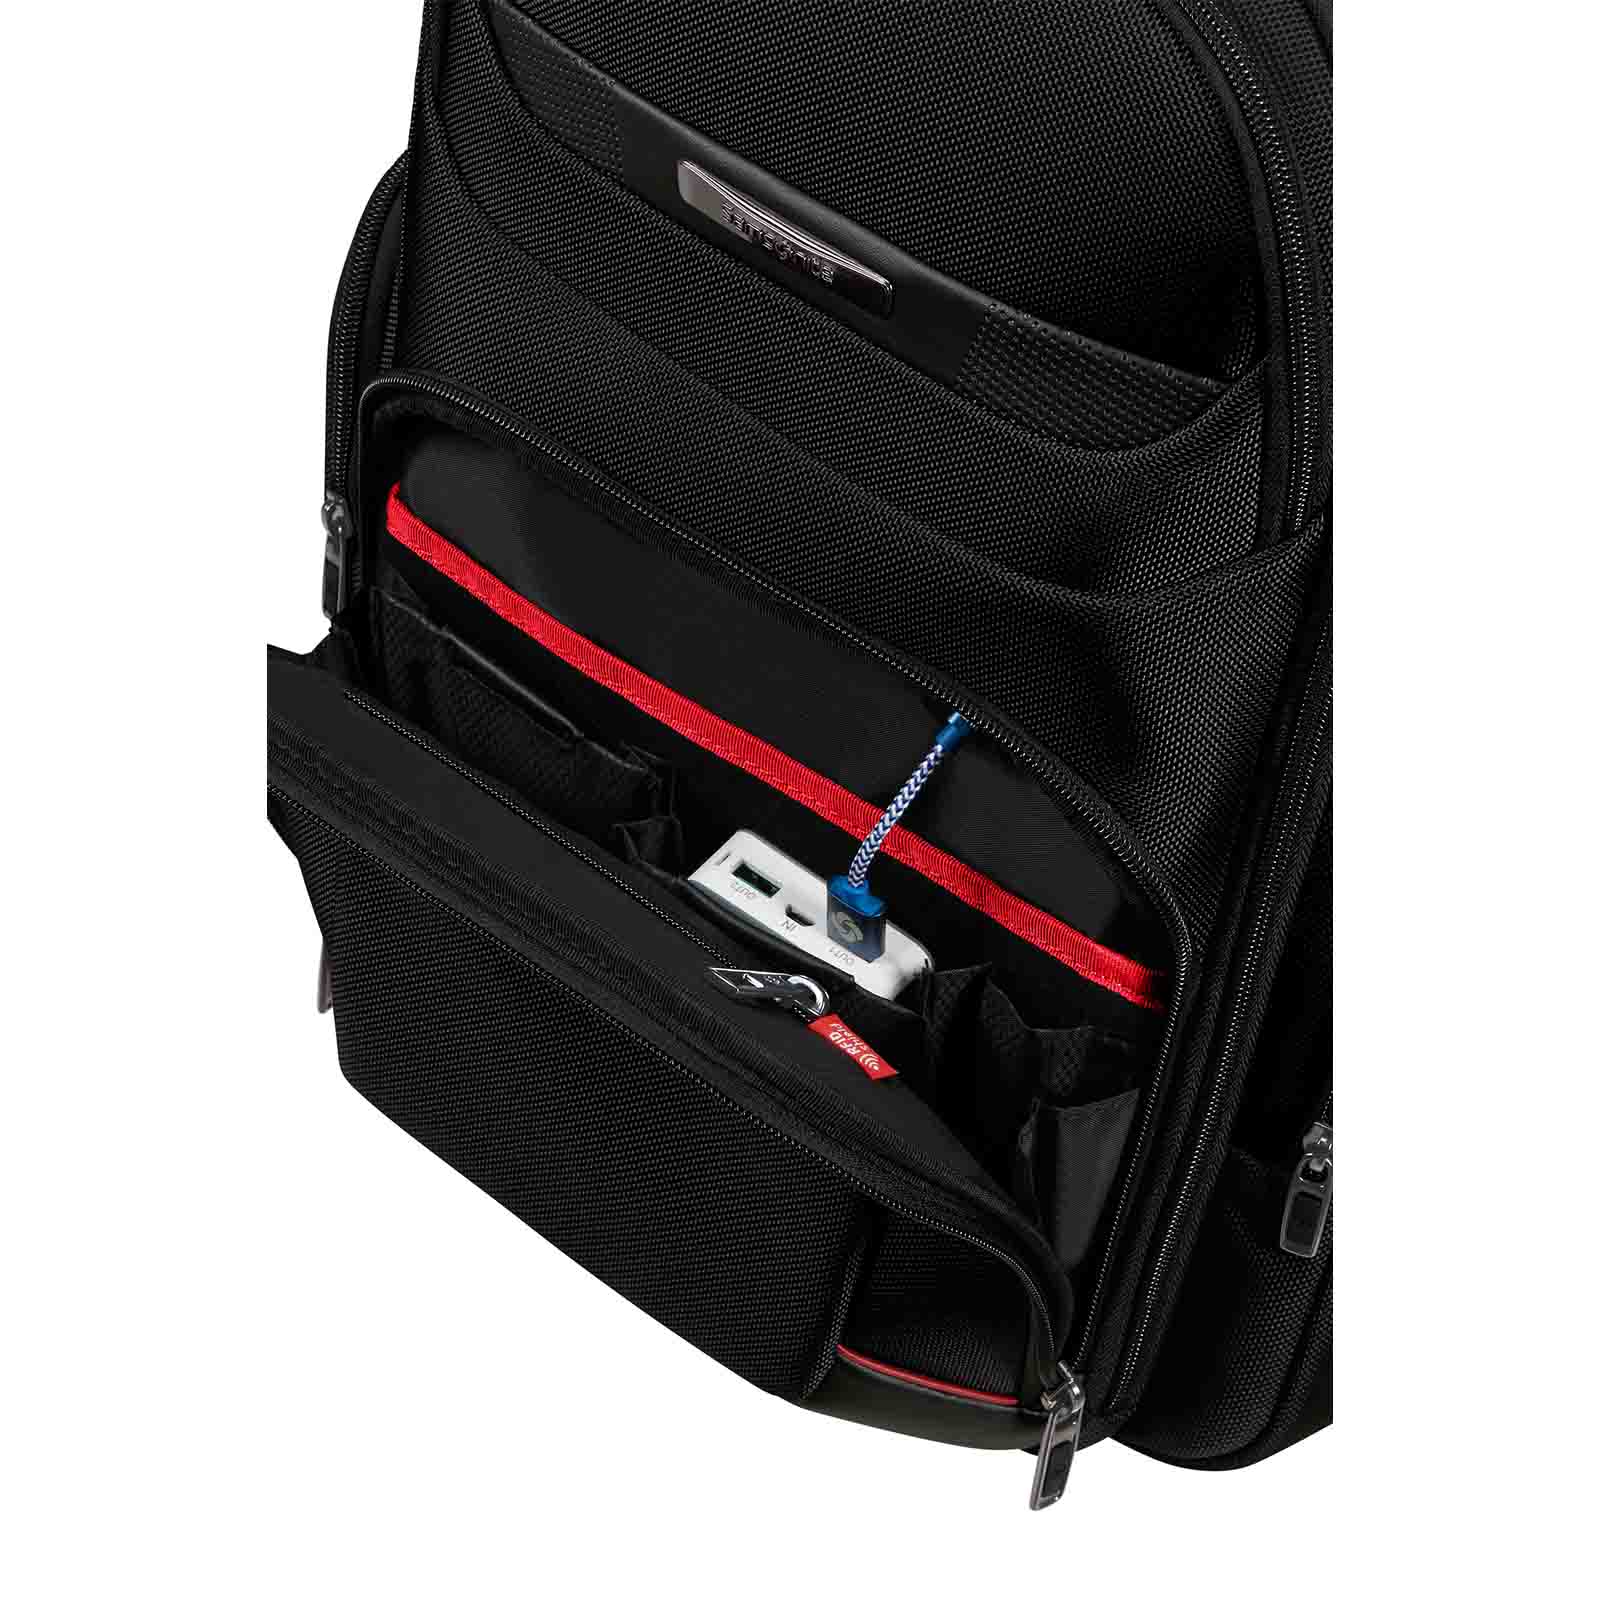 Samsonite-Pro-Dlx-6-Laptop-Backpack-15-Inch-Pocket